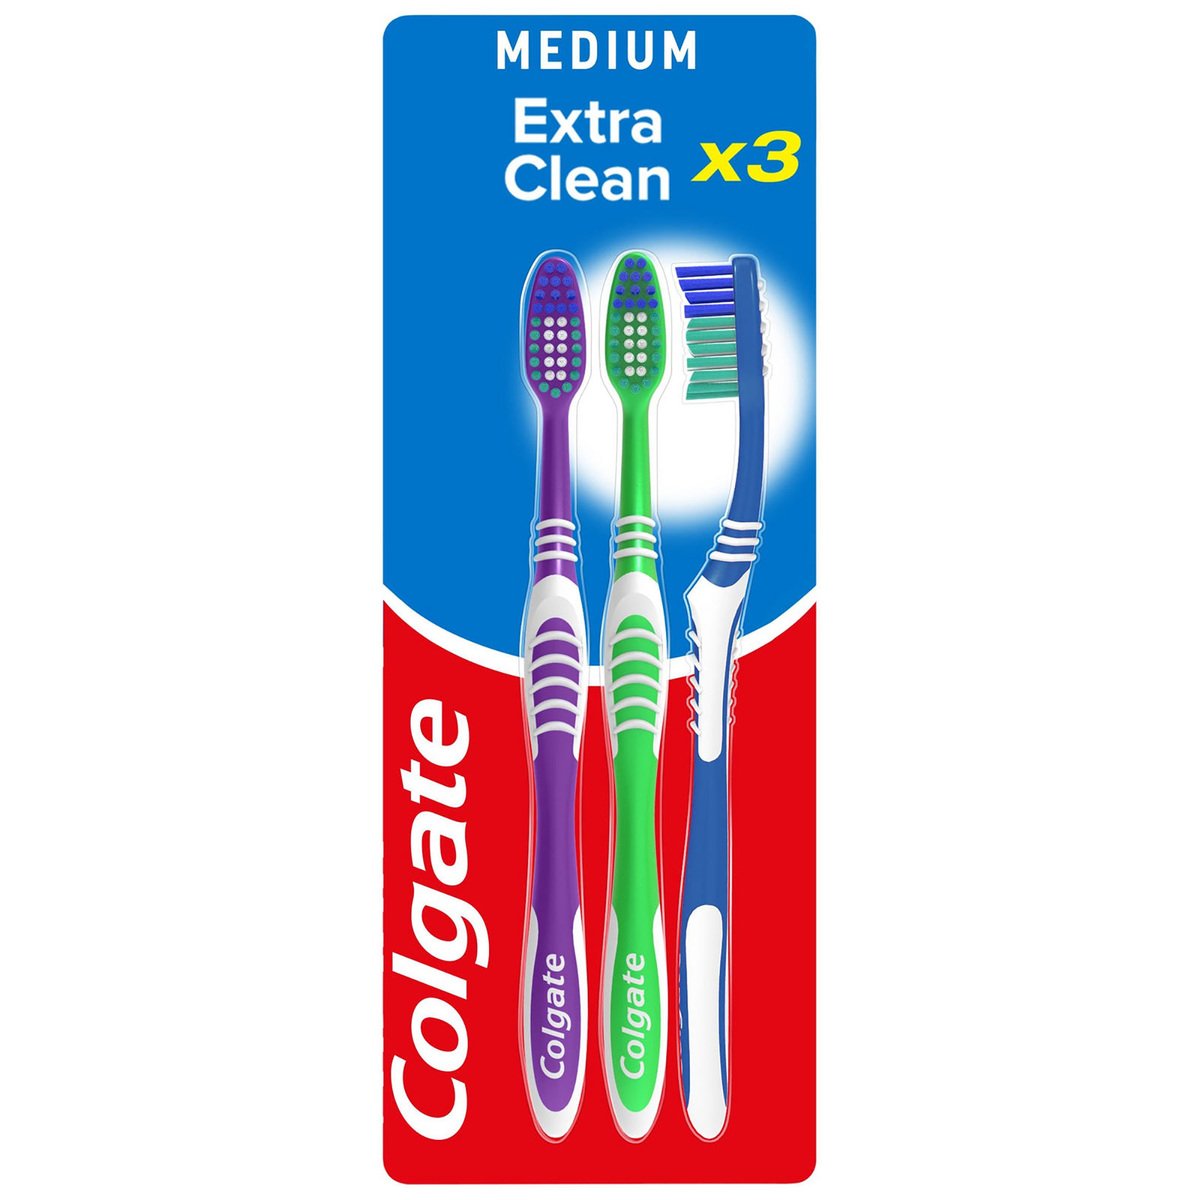 Colgate Extra Clean Multipack Medium Toothbrush 3 pcs